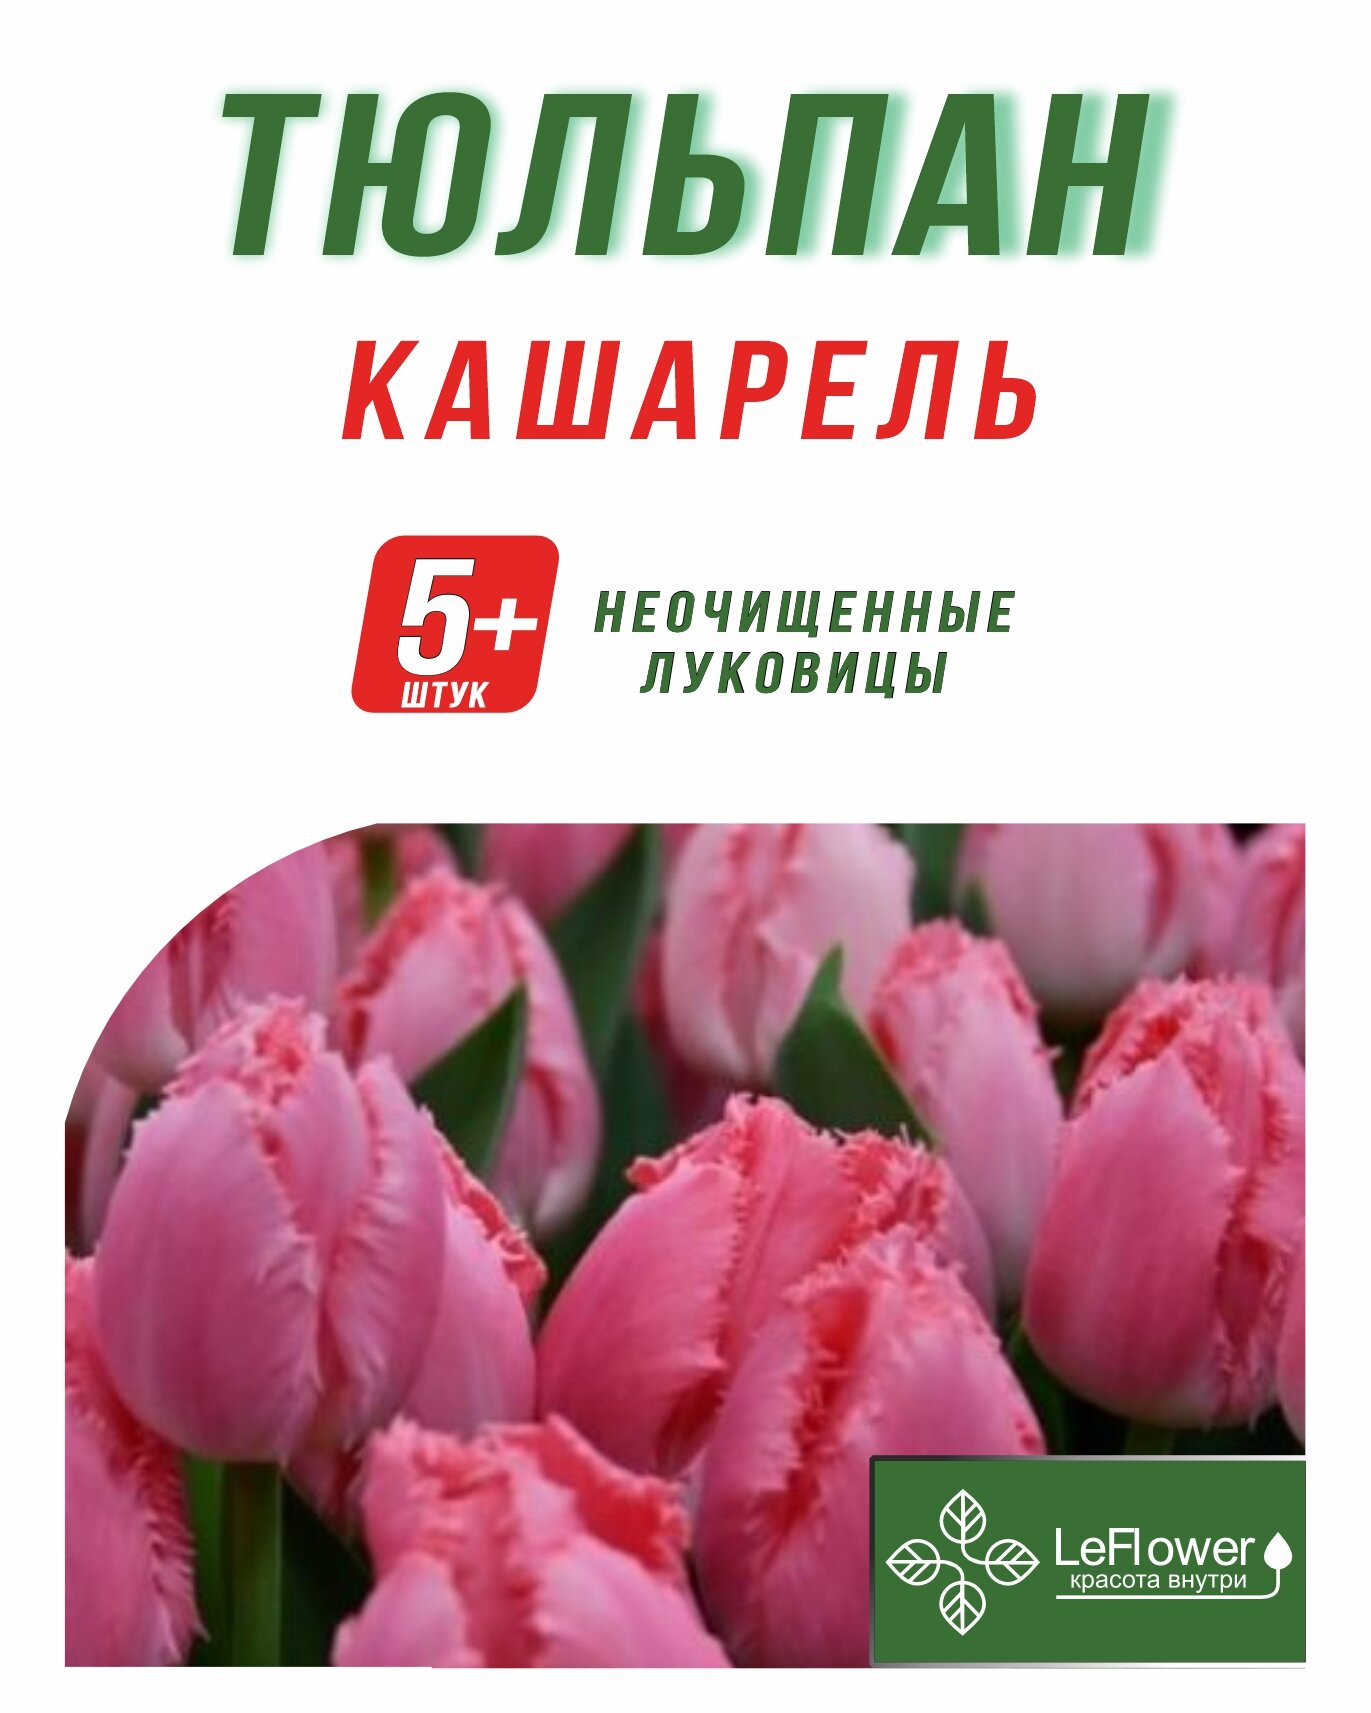 Тюльпан Луковица, Кашарель, 5+ шт